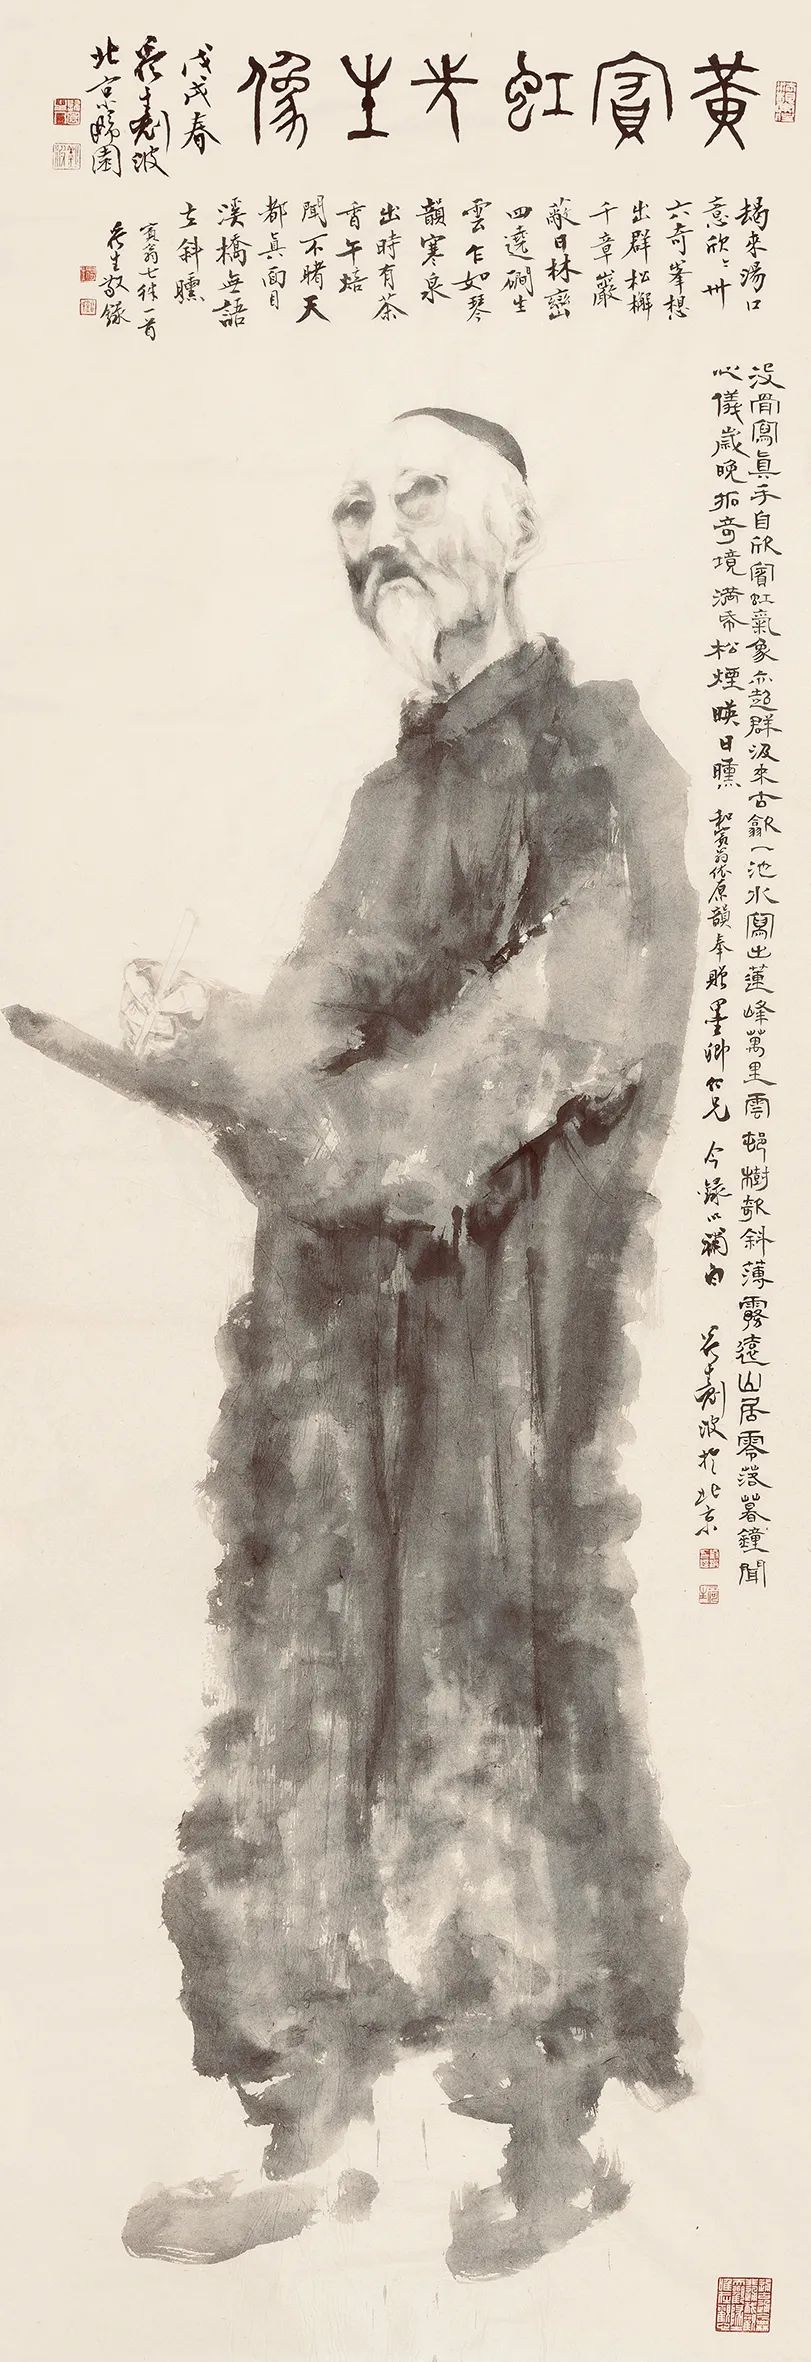 刘波丨用心讲好中国故事 用画笔画赞百年巨匠